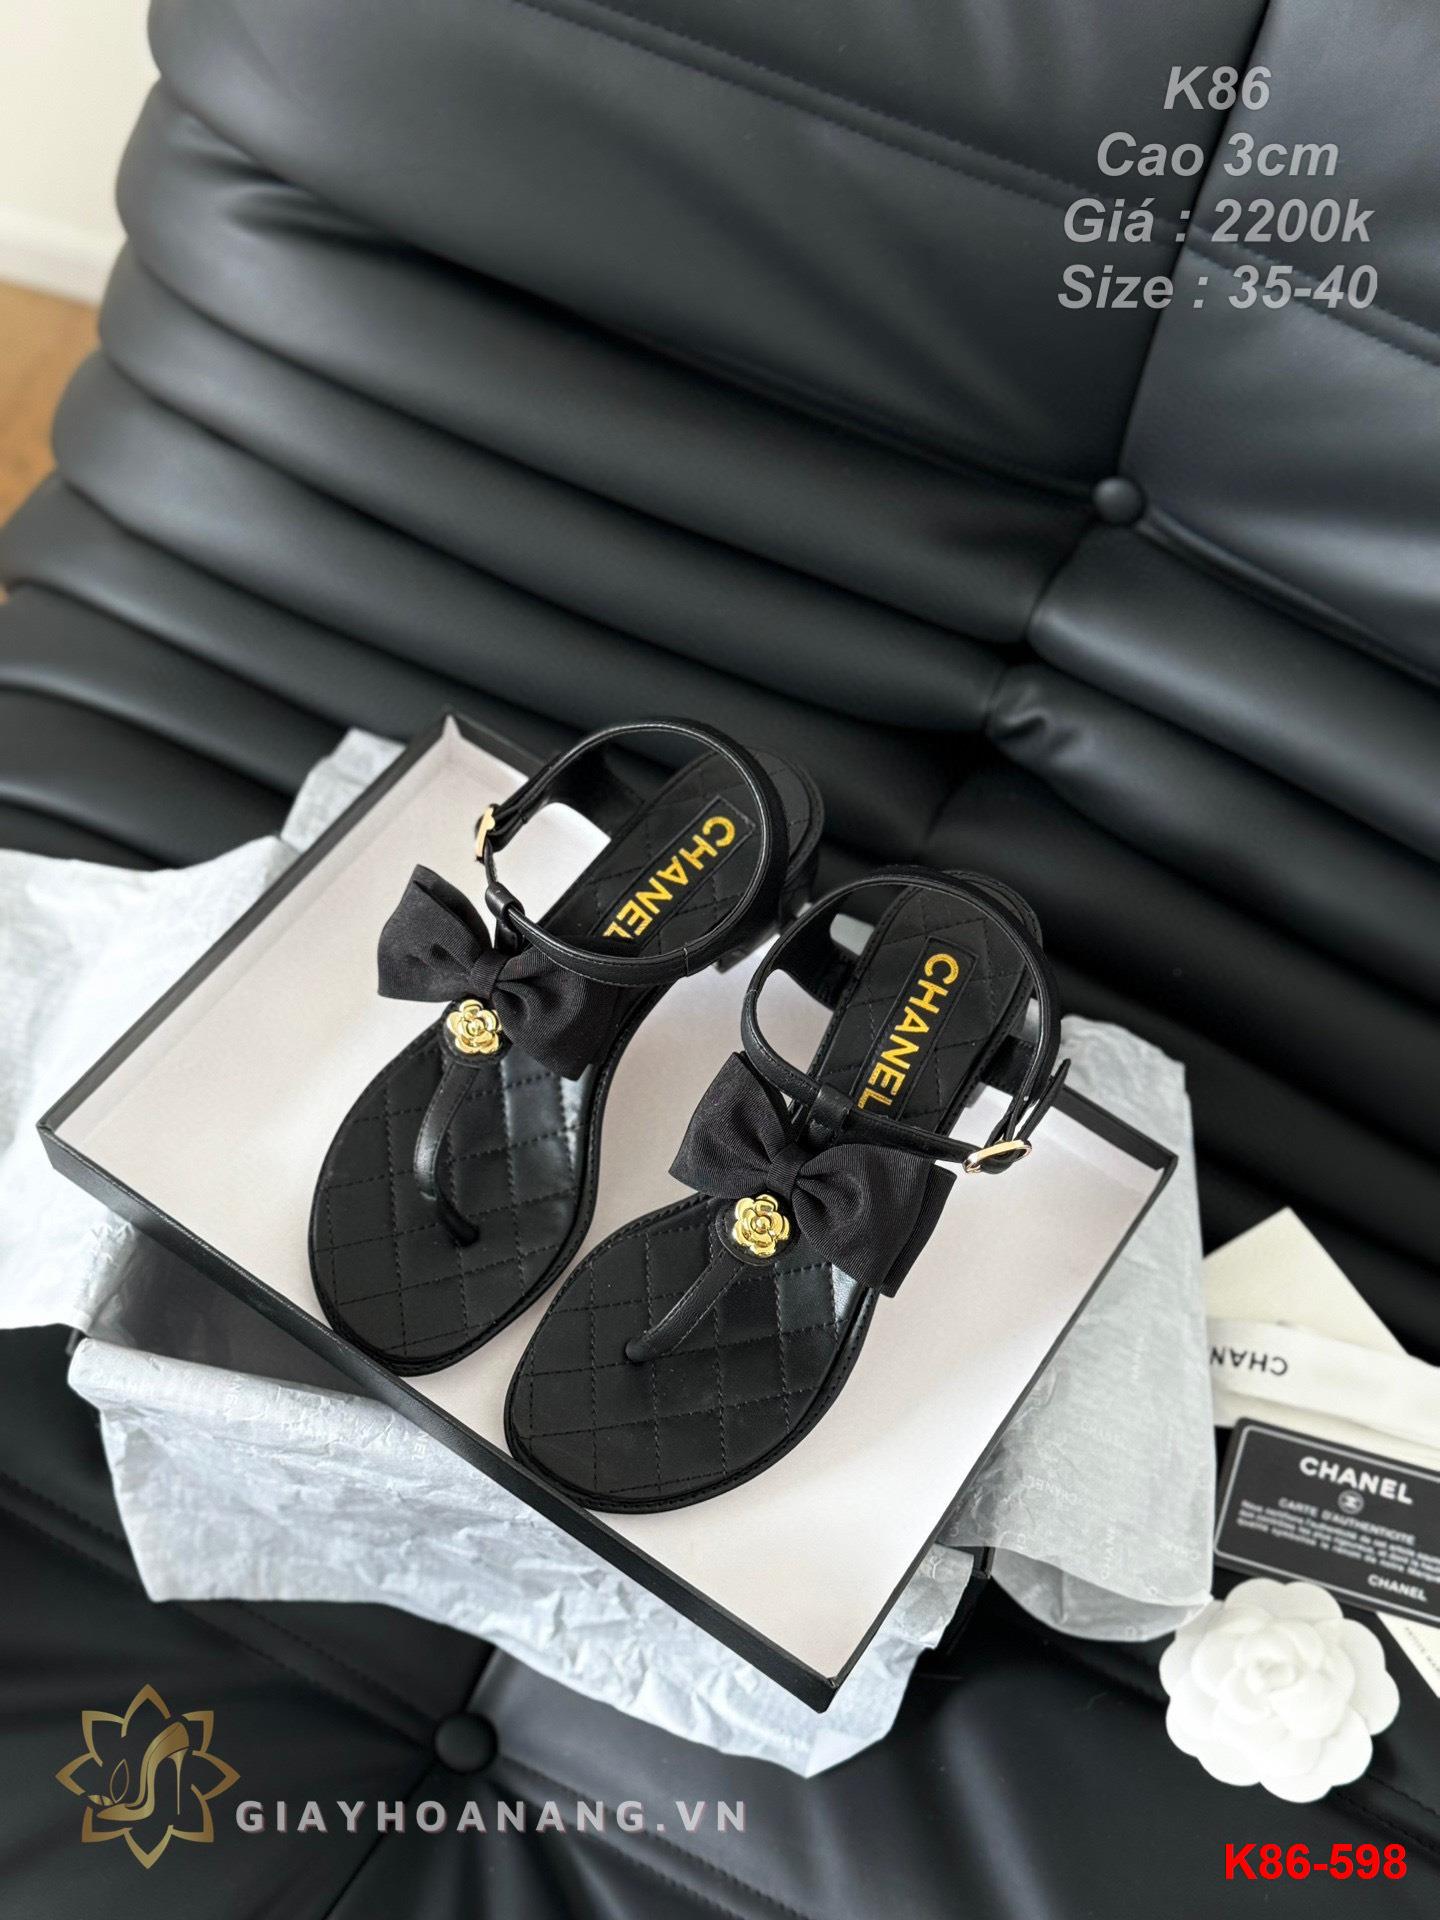 K86-598 Chanel sandal cao gót 3cm siêu cấp